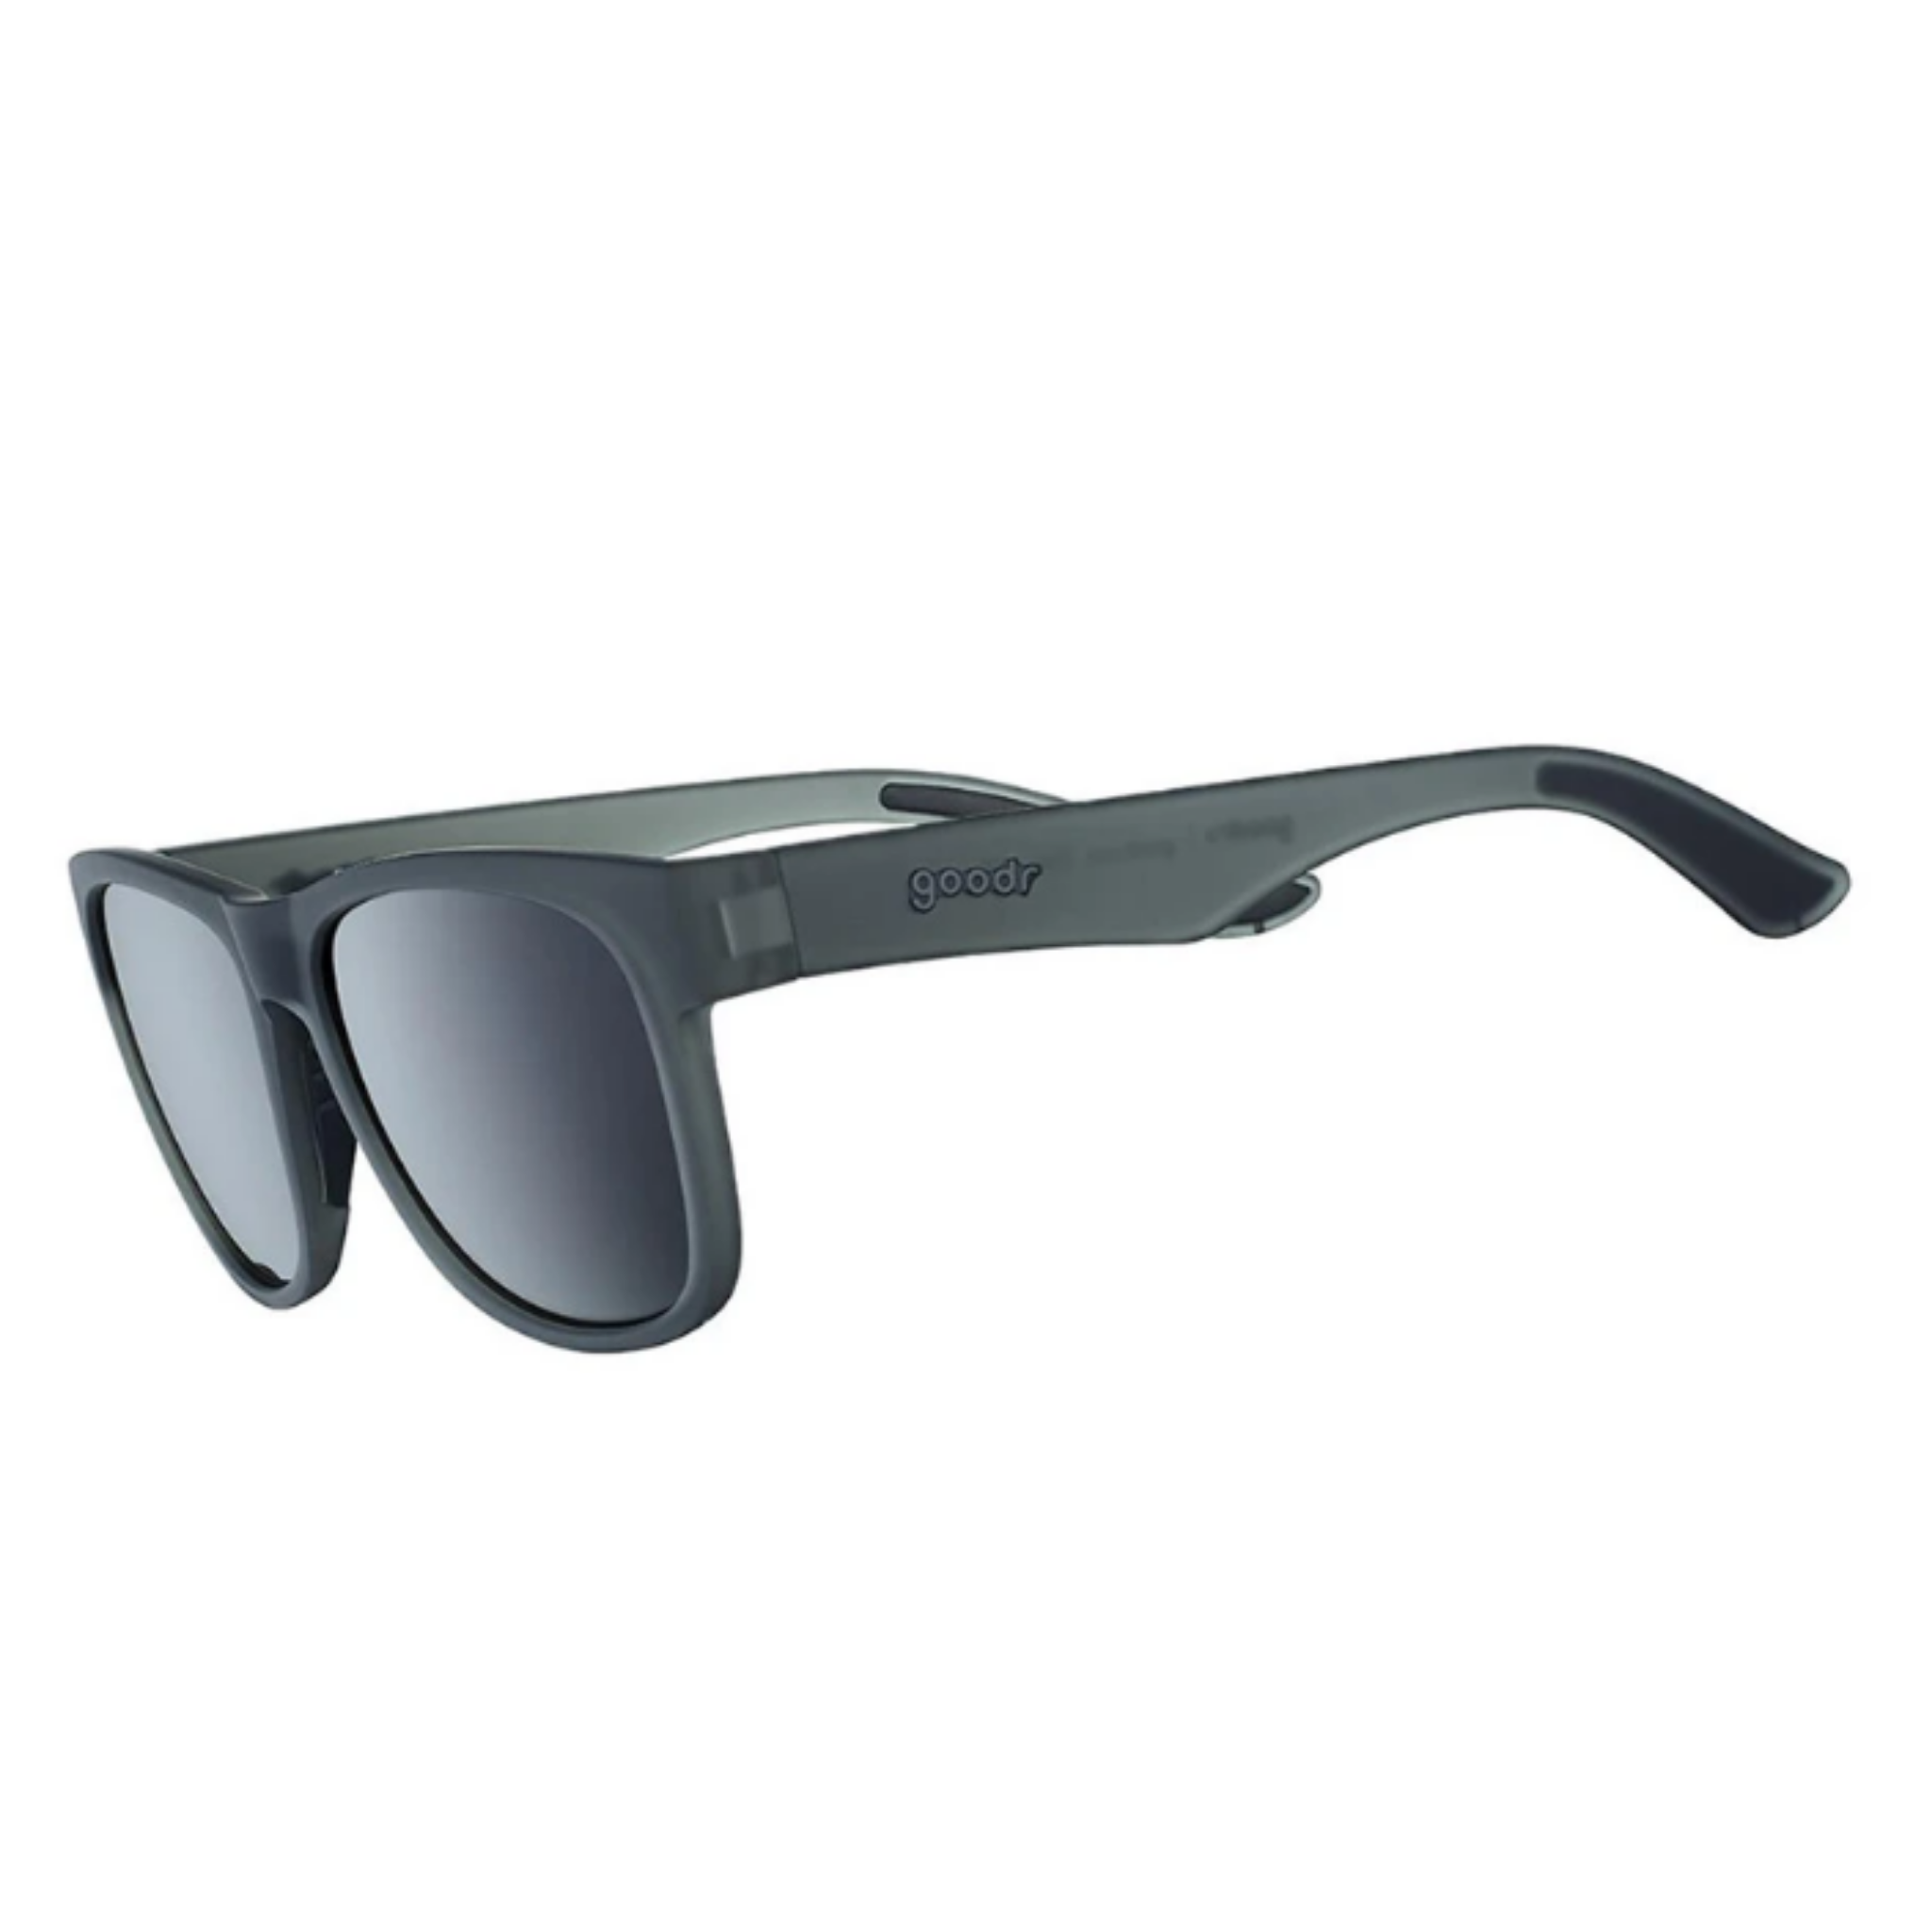 Goodr - BFG Sunglasses Hooked On Onyx